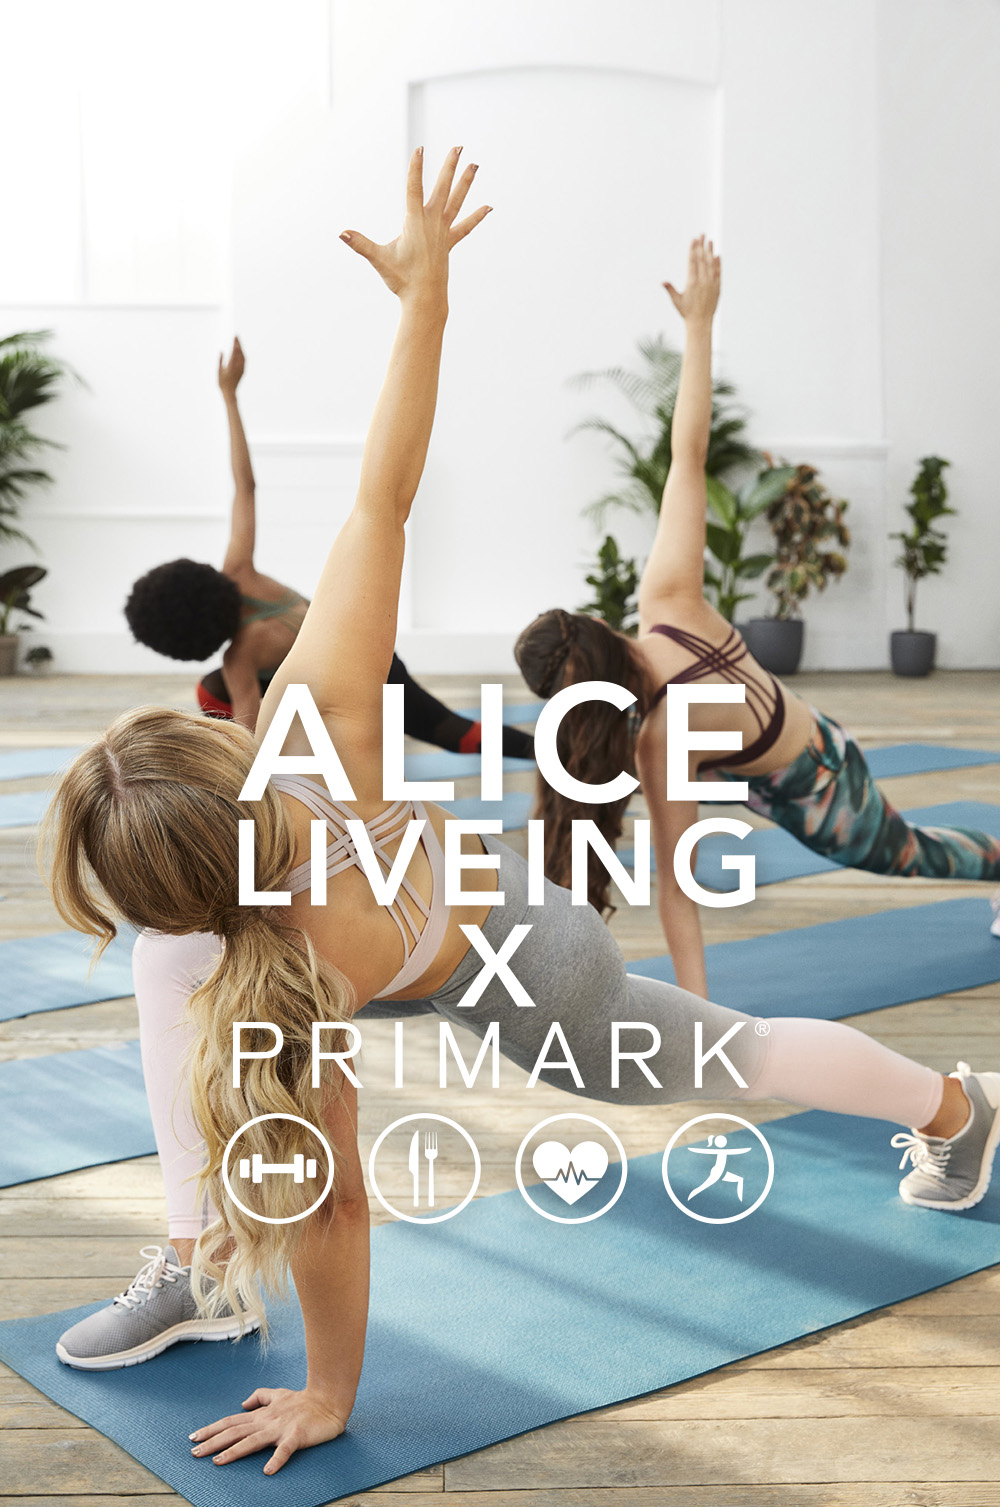 Alice Liveing x Primark, la colección de ropa deportiva low cost para propósitos de 2019 - Modalia.es